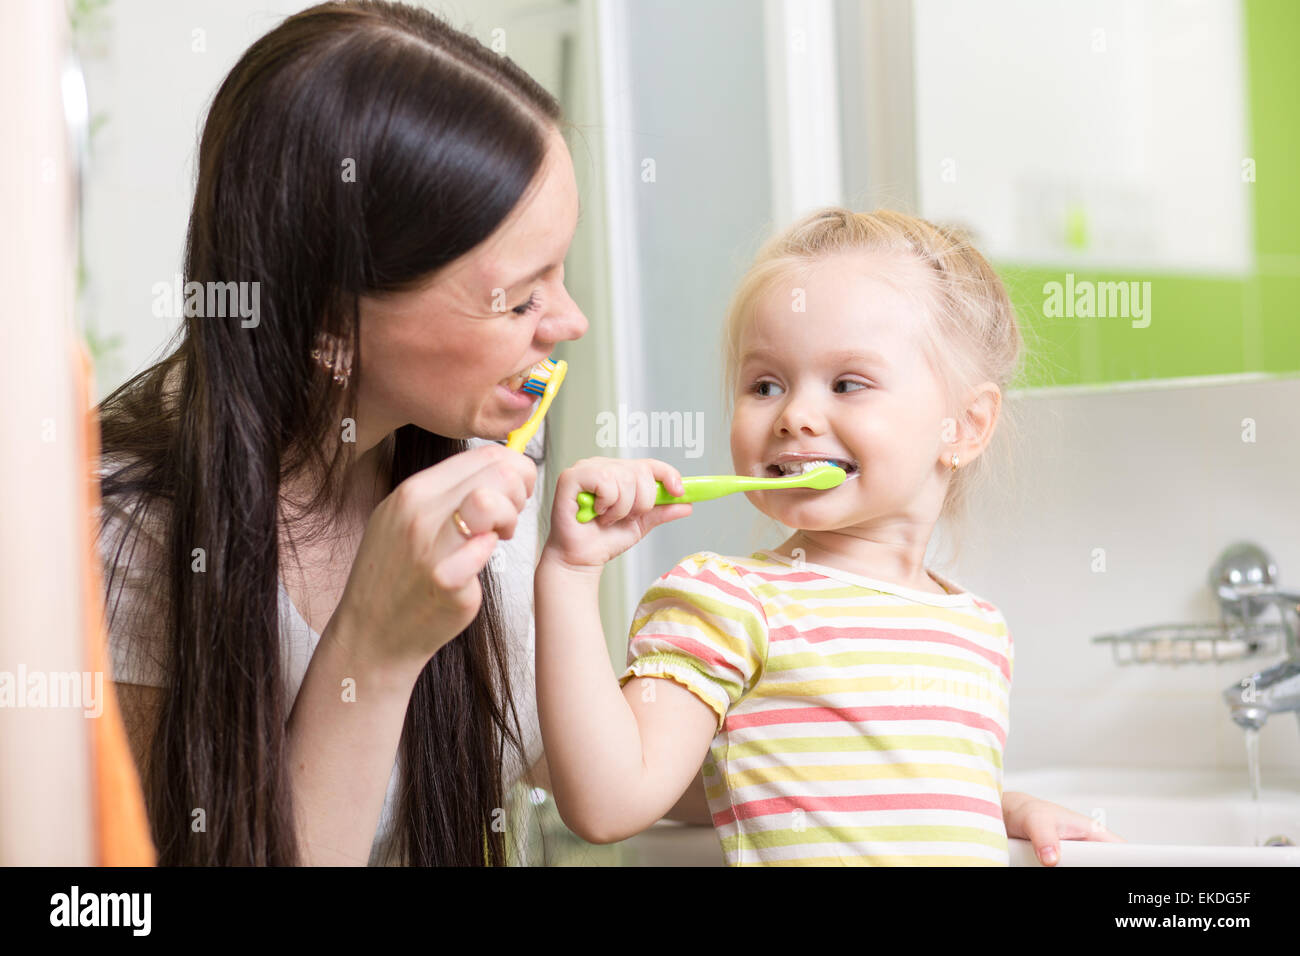 Lindo mom cepillado de dientes infantil docente Foto de stock